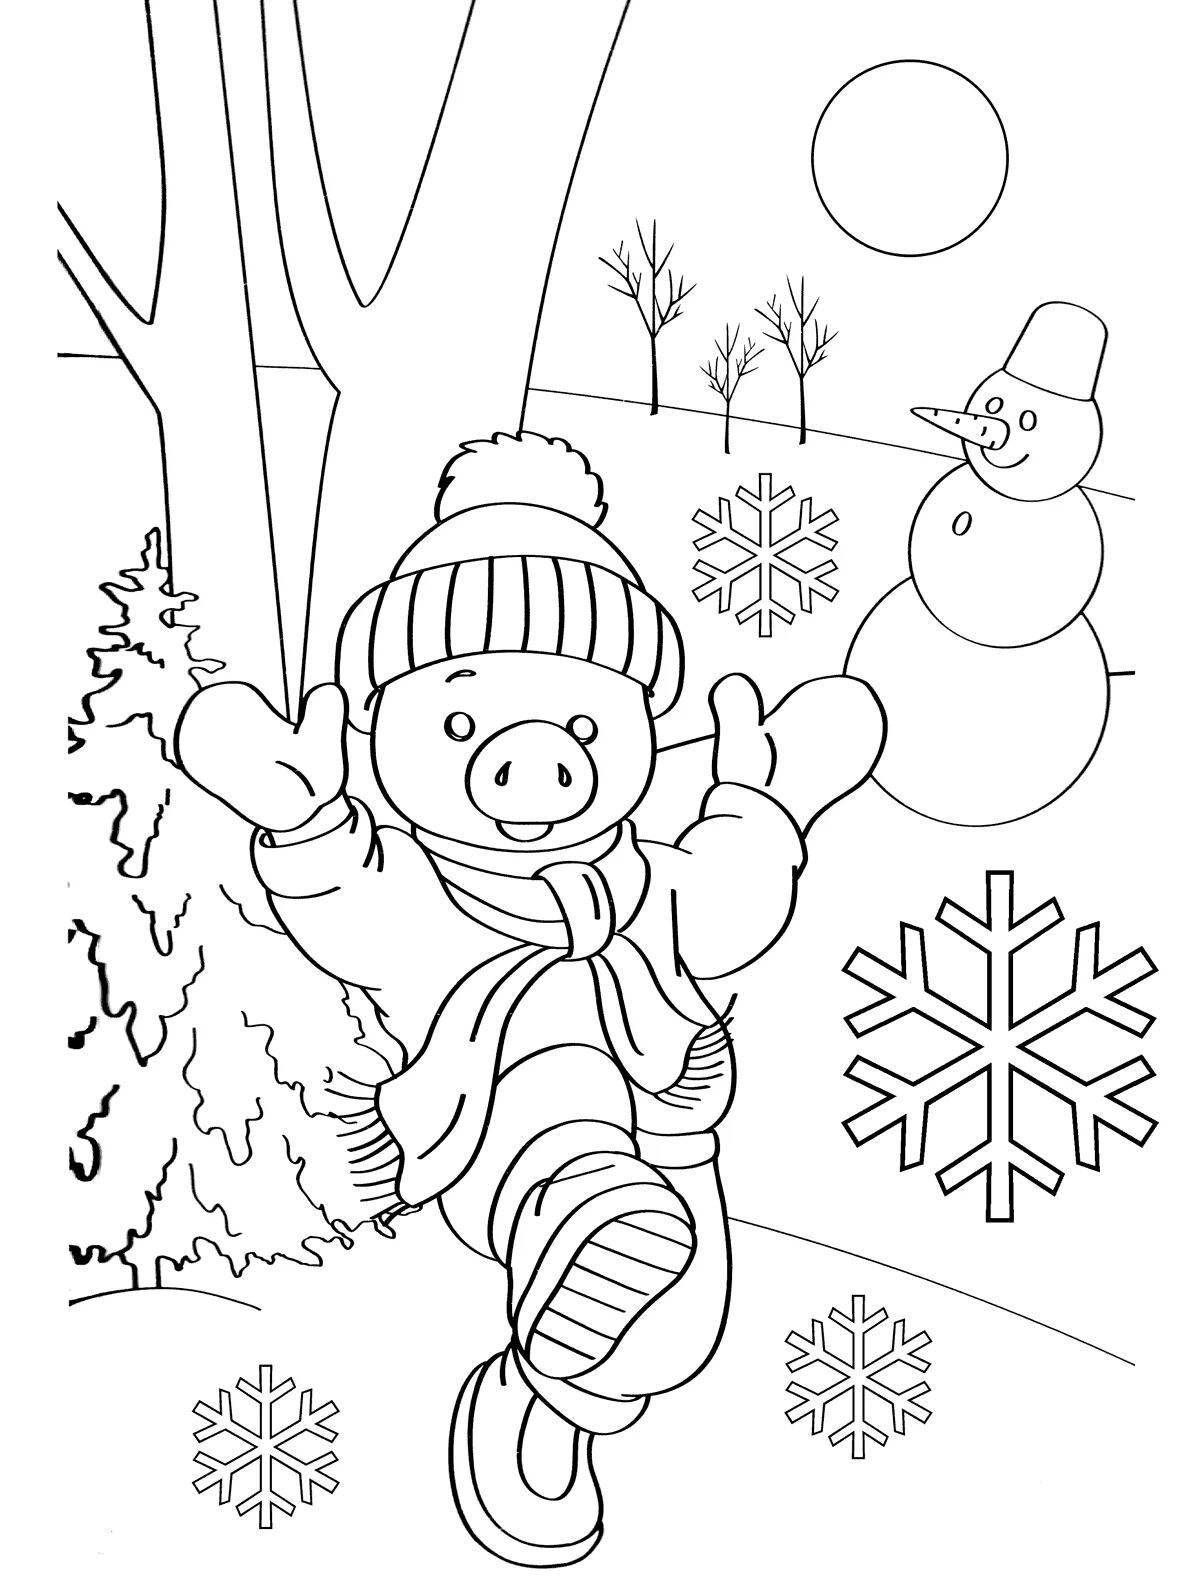 Великолепная зимняя раскраска для детей 6-7 лет